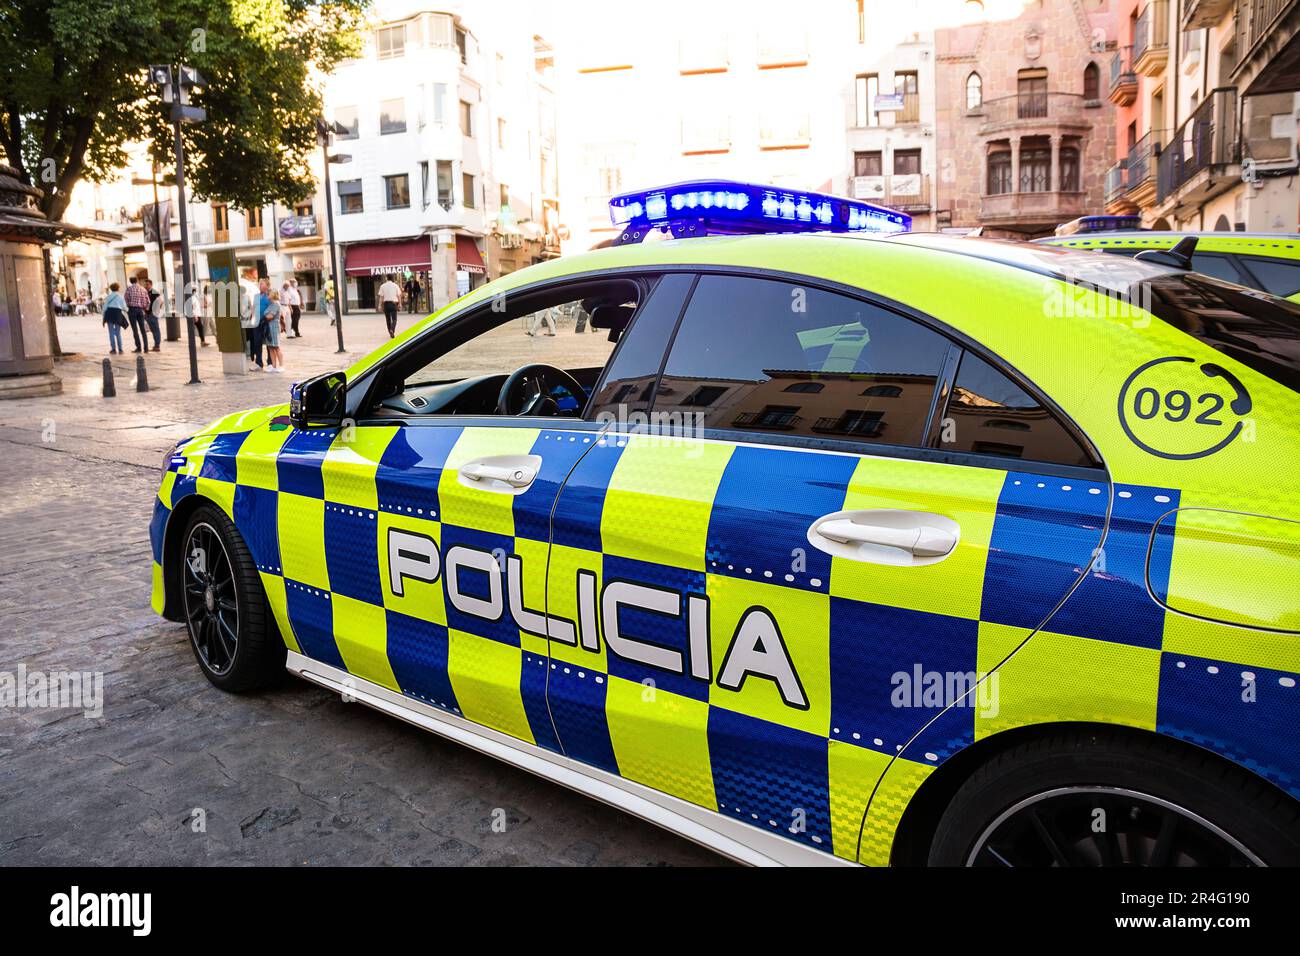 Plasencia, Spain - 25 June 2022: Police car in the historic center of Plasencia, Spain Stock Photo